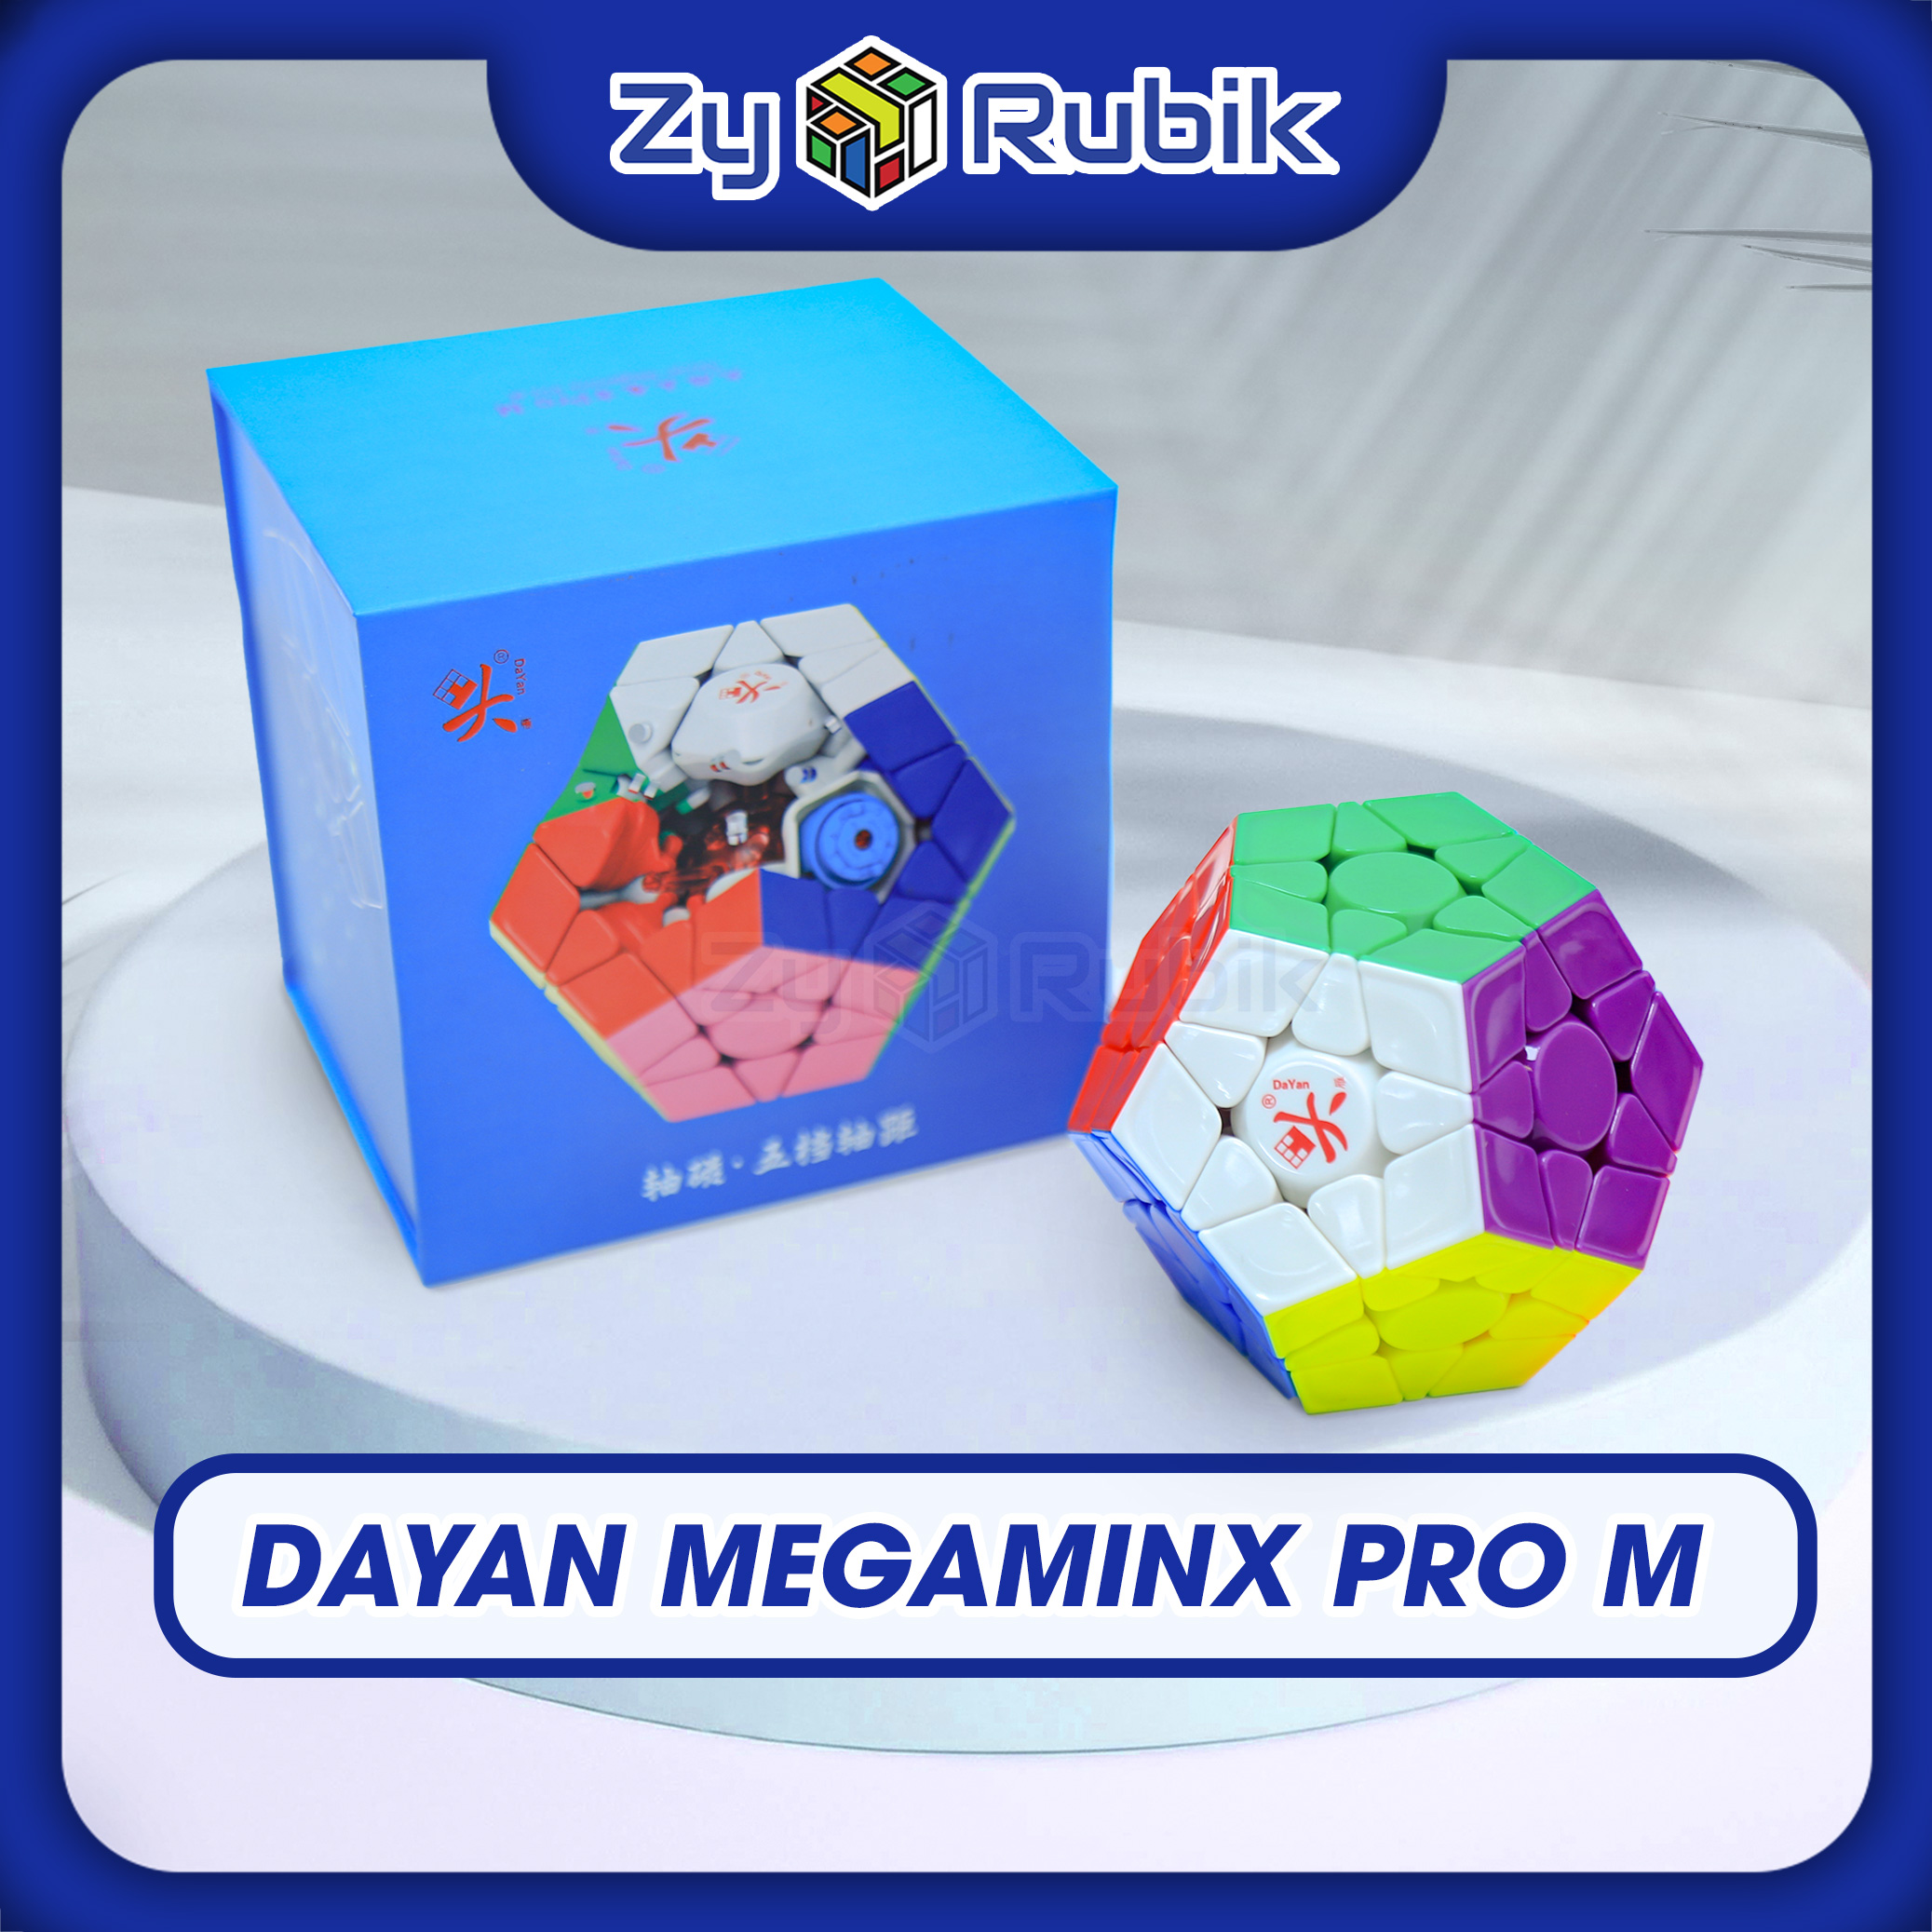 Megampx Dayan pro M - Dayan megamul pro m Vernier less cube